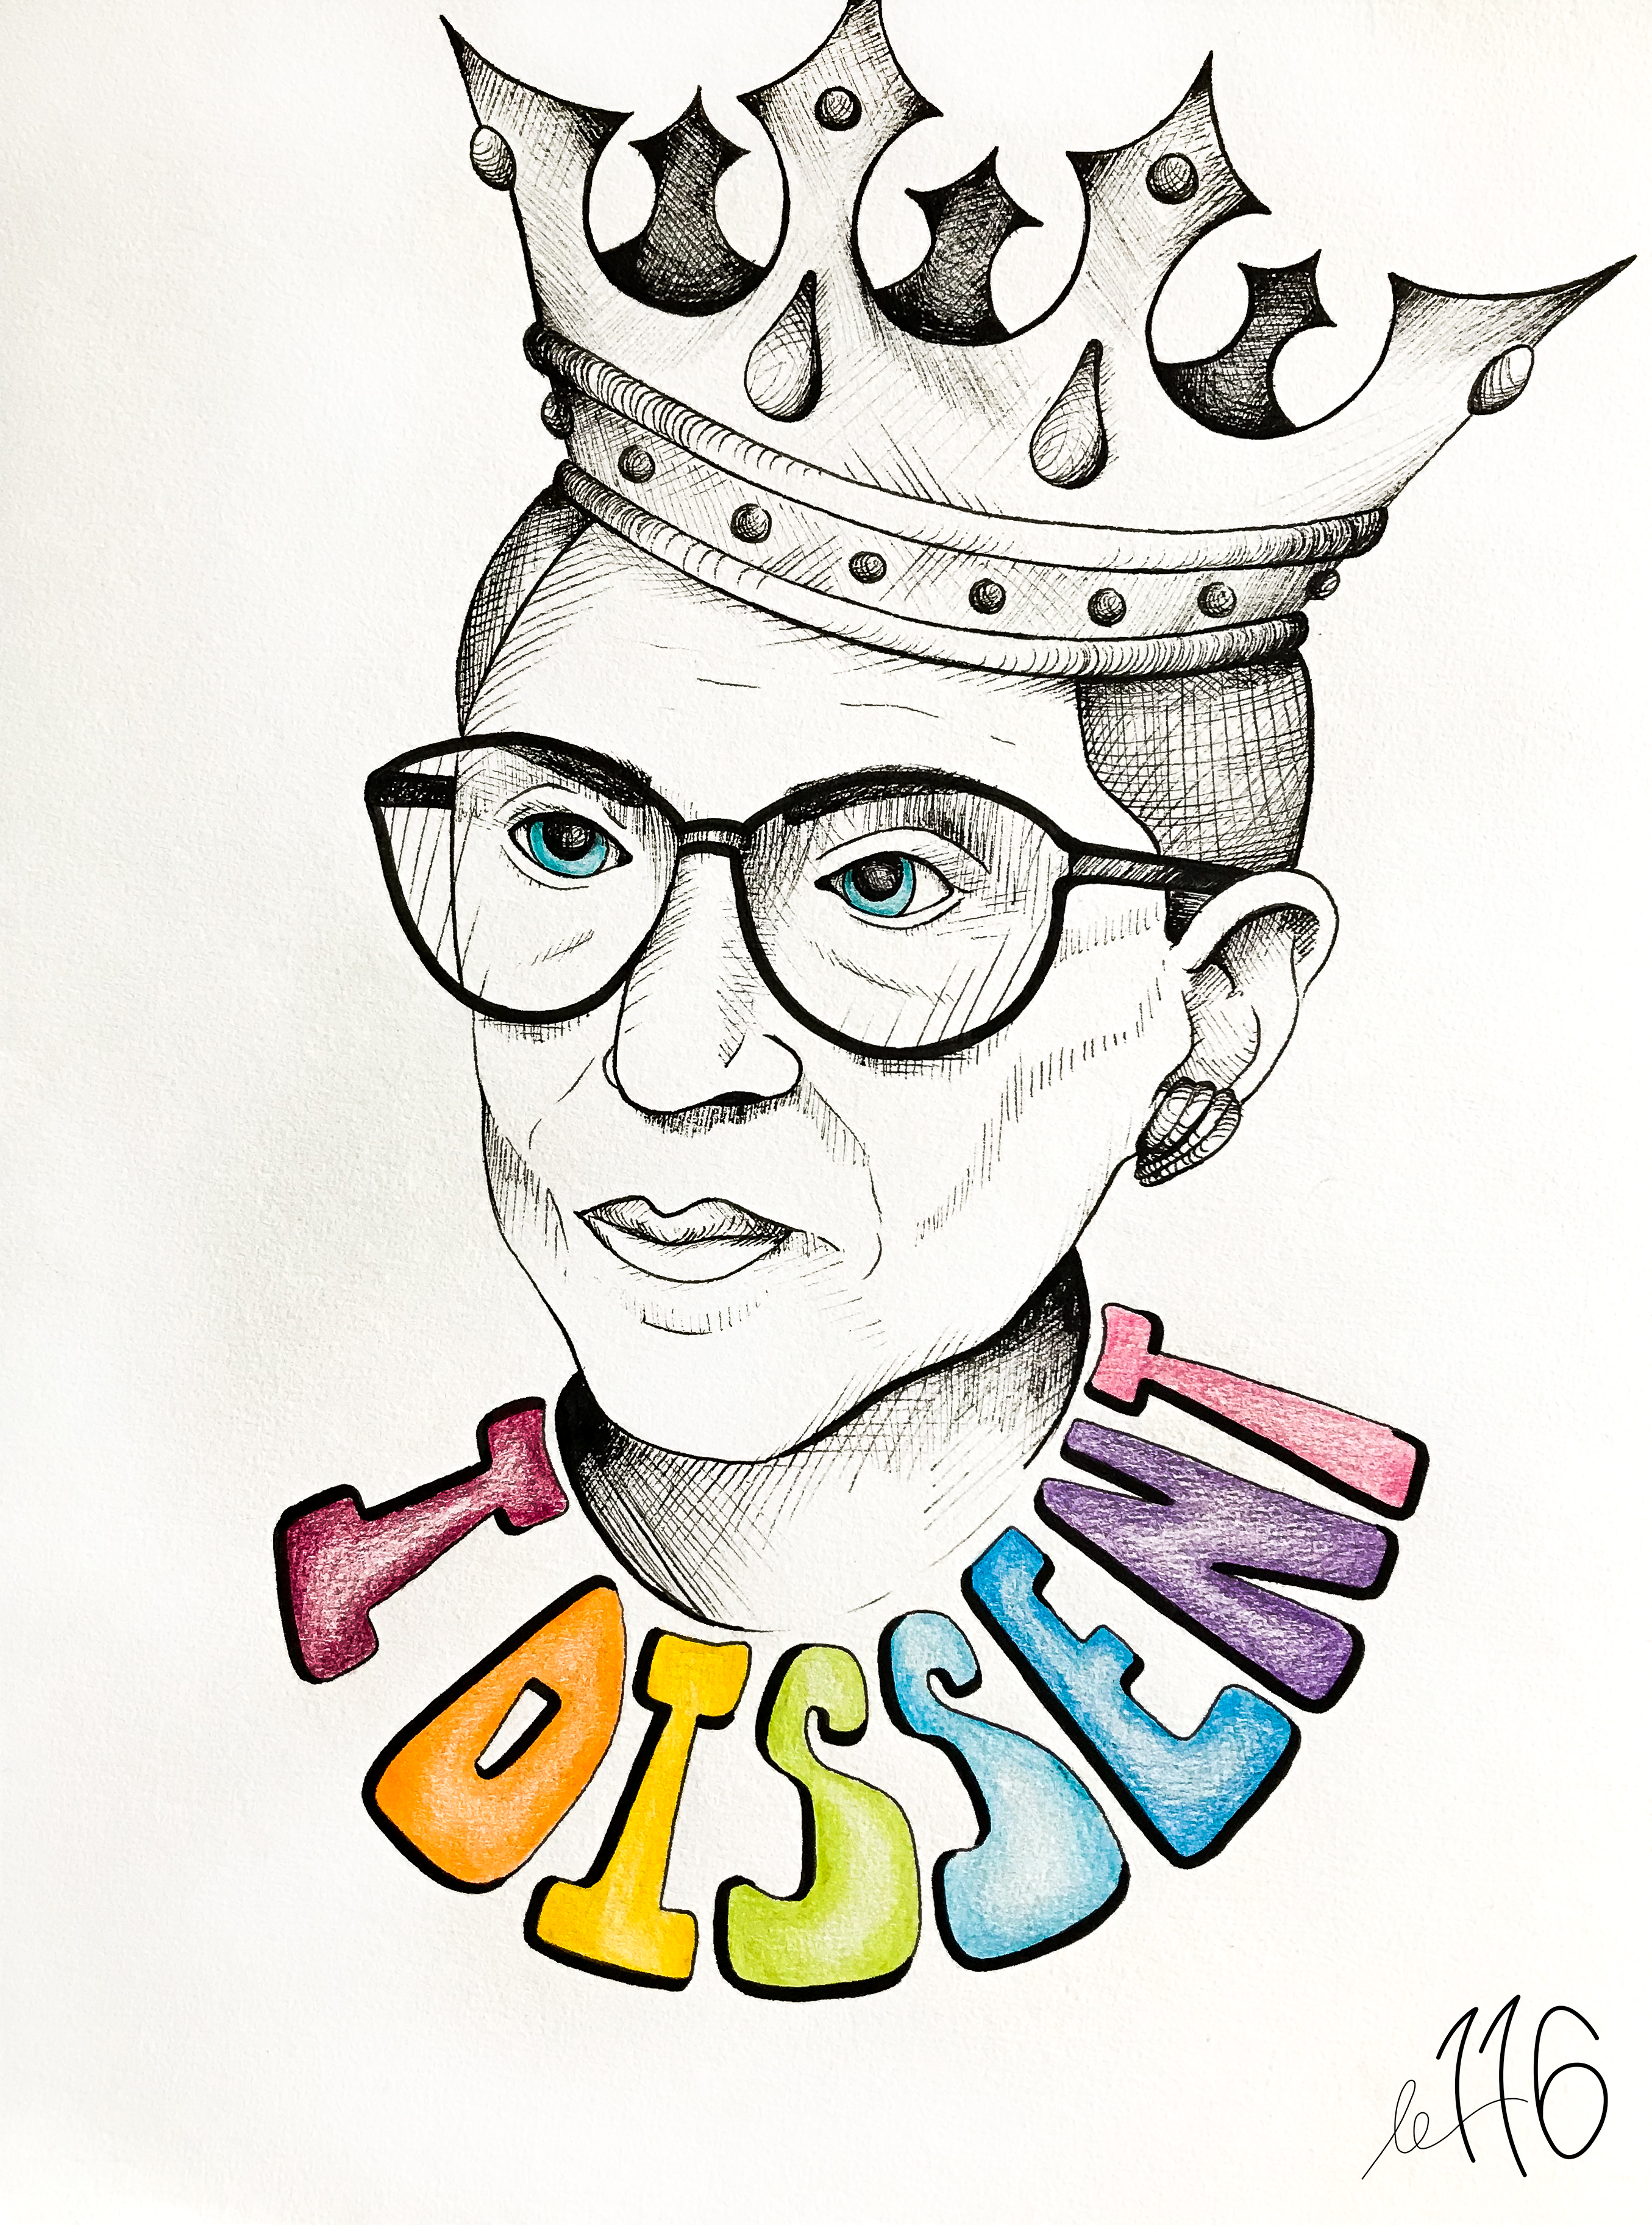 An homage to Ruth Bader Ginsburg